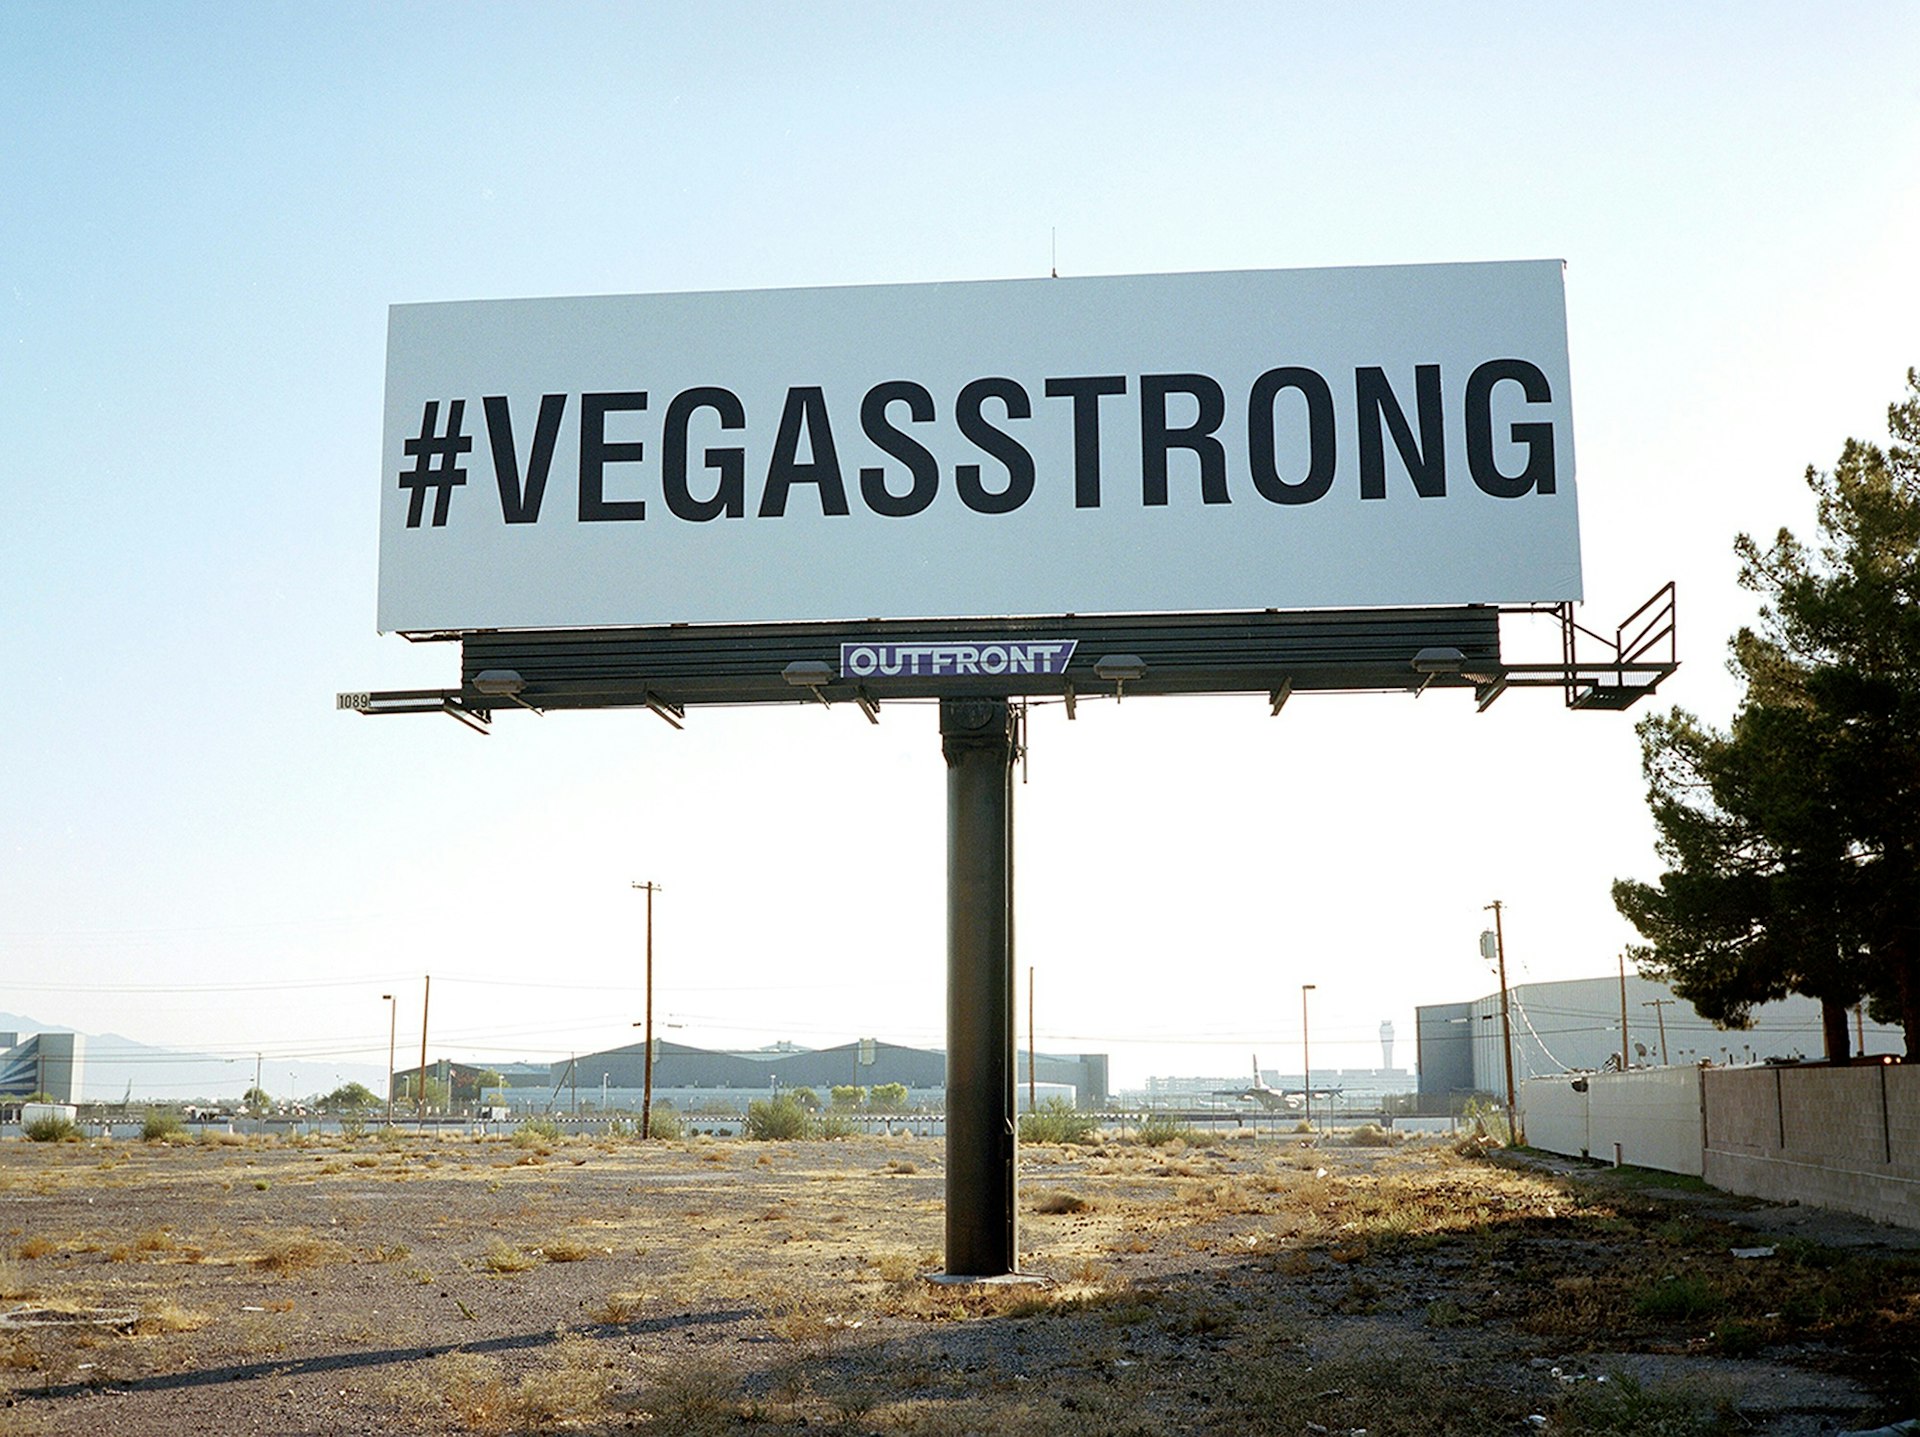 Hashtag VegasStrong